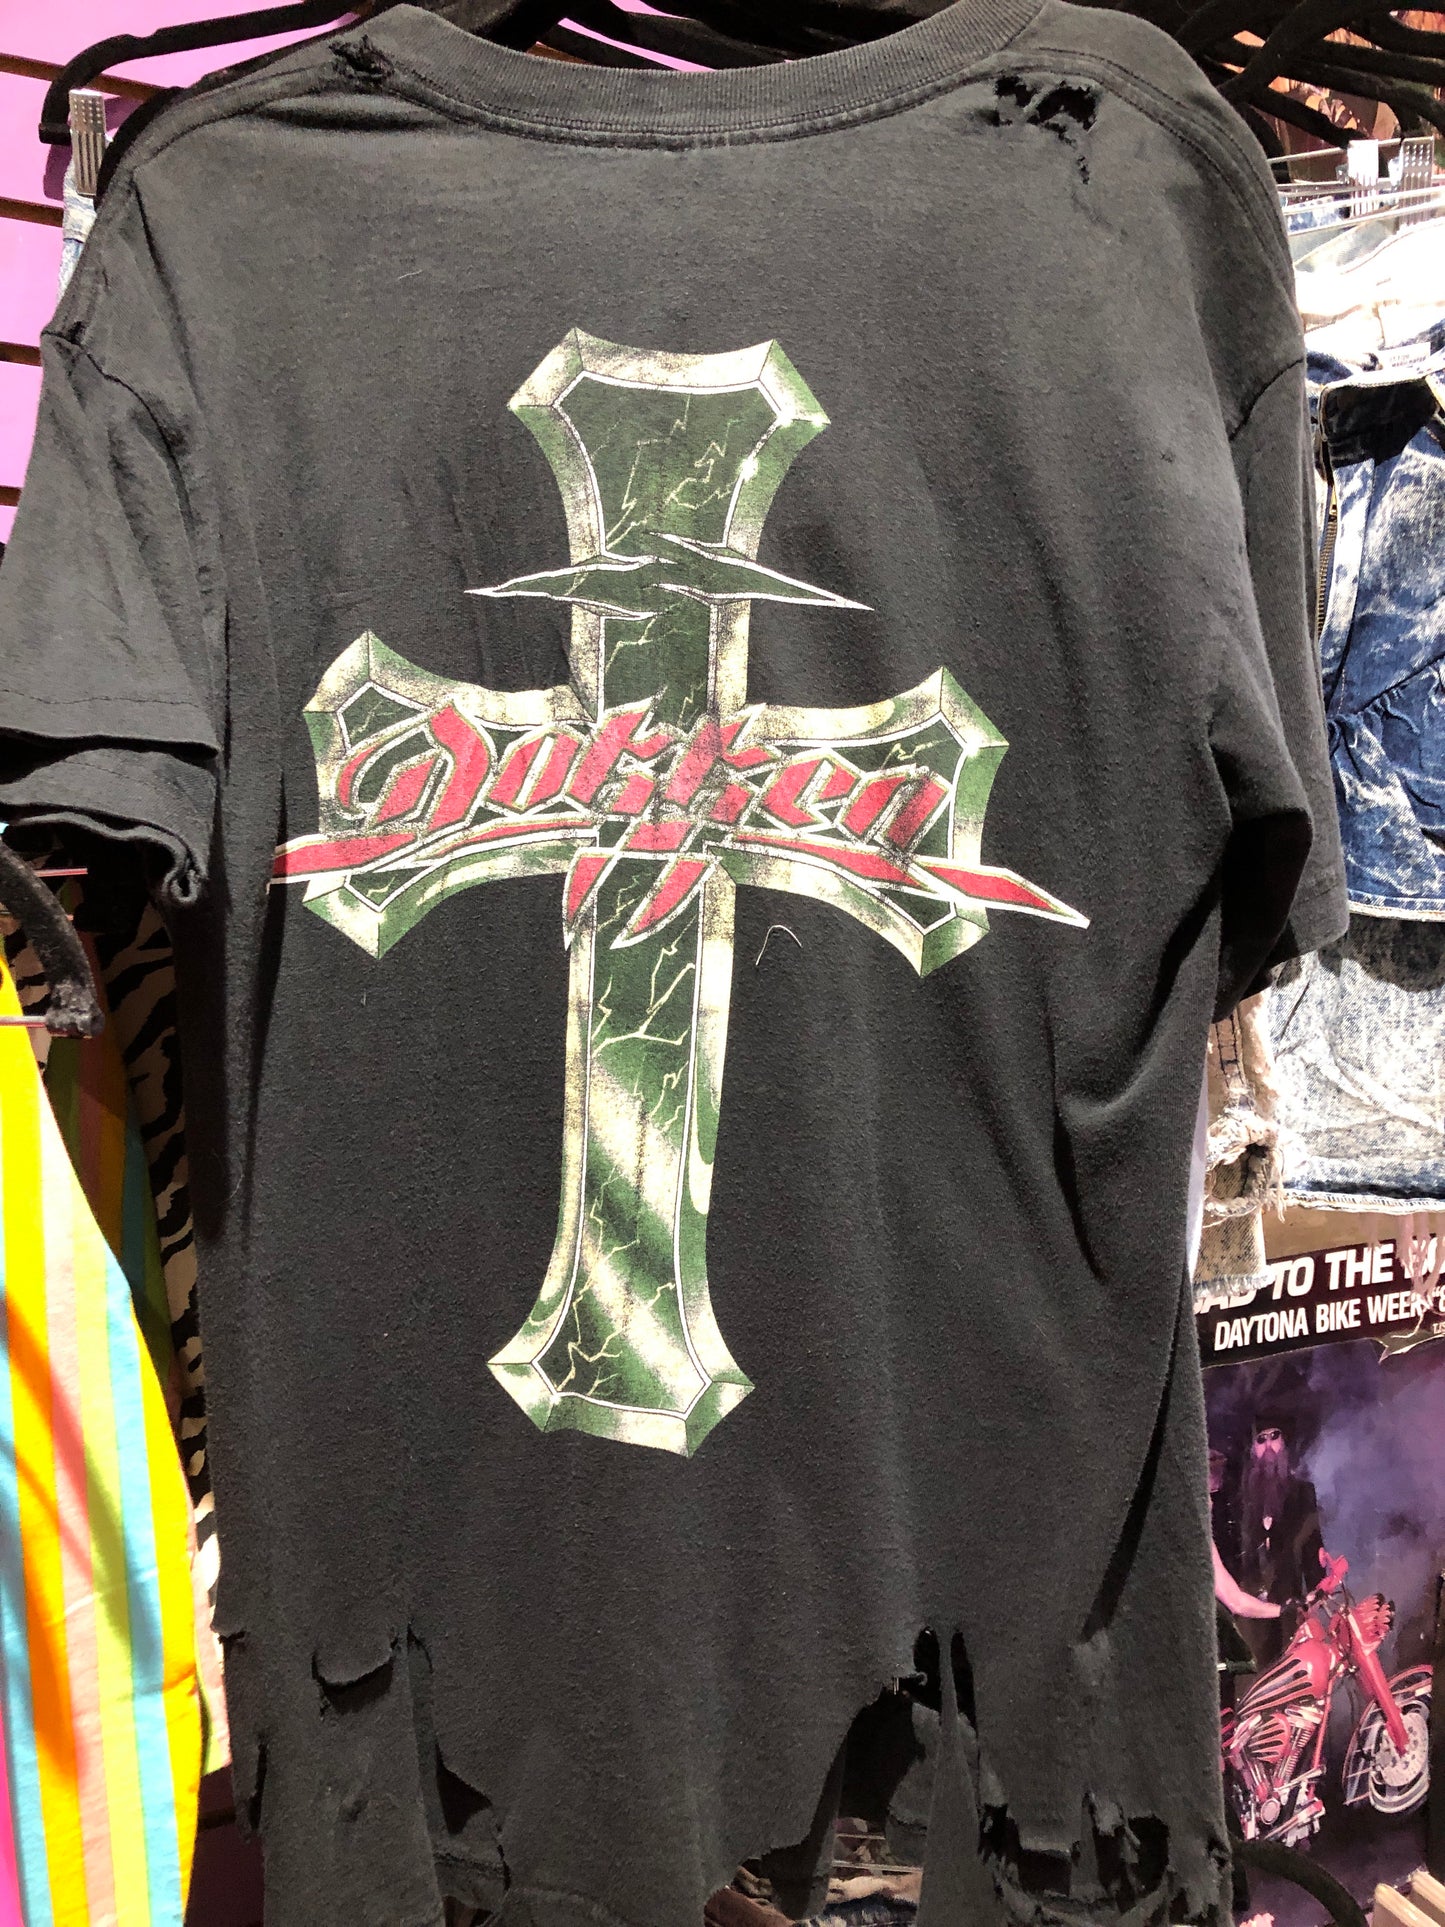 Vintage 90s Dokken shredded and thrashed T-shirt - Spark Pretty